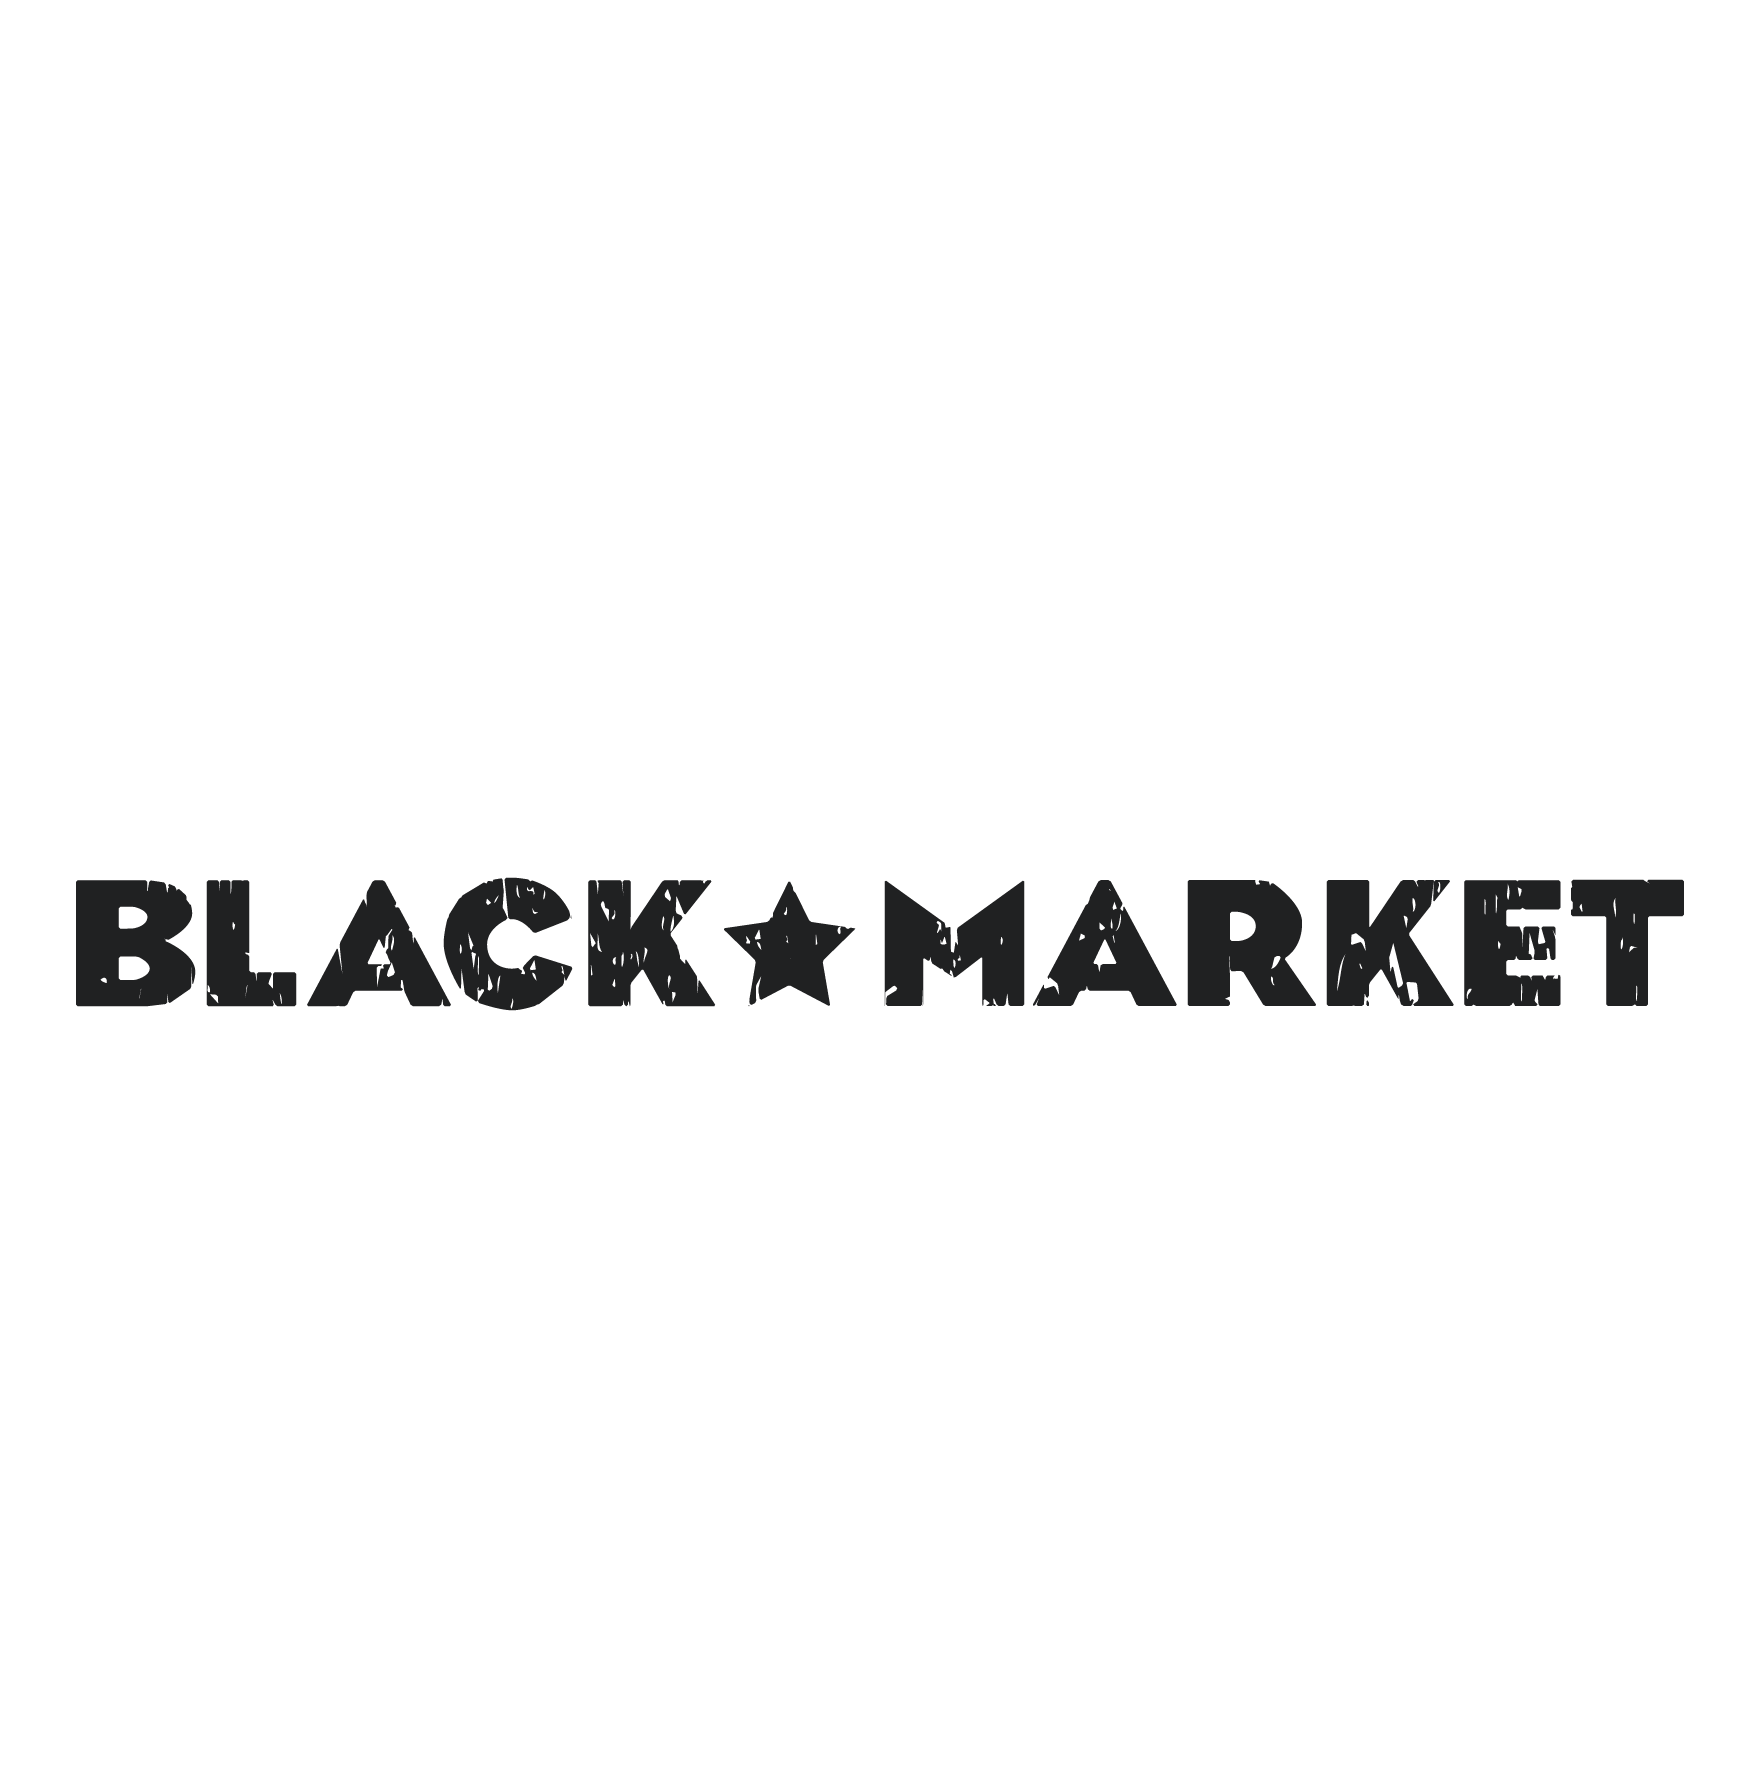 Black Market, ресторан в Москве на метро Фрунзенская - отзывы, адрес, телеф...